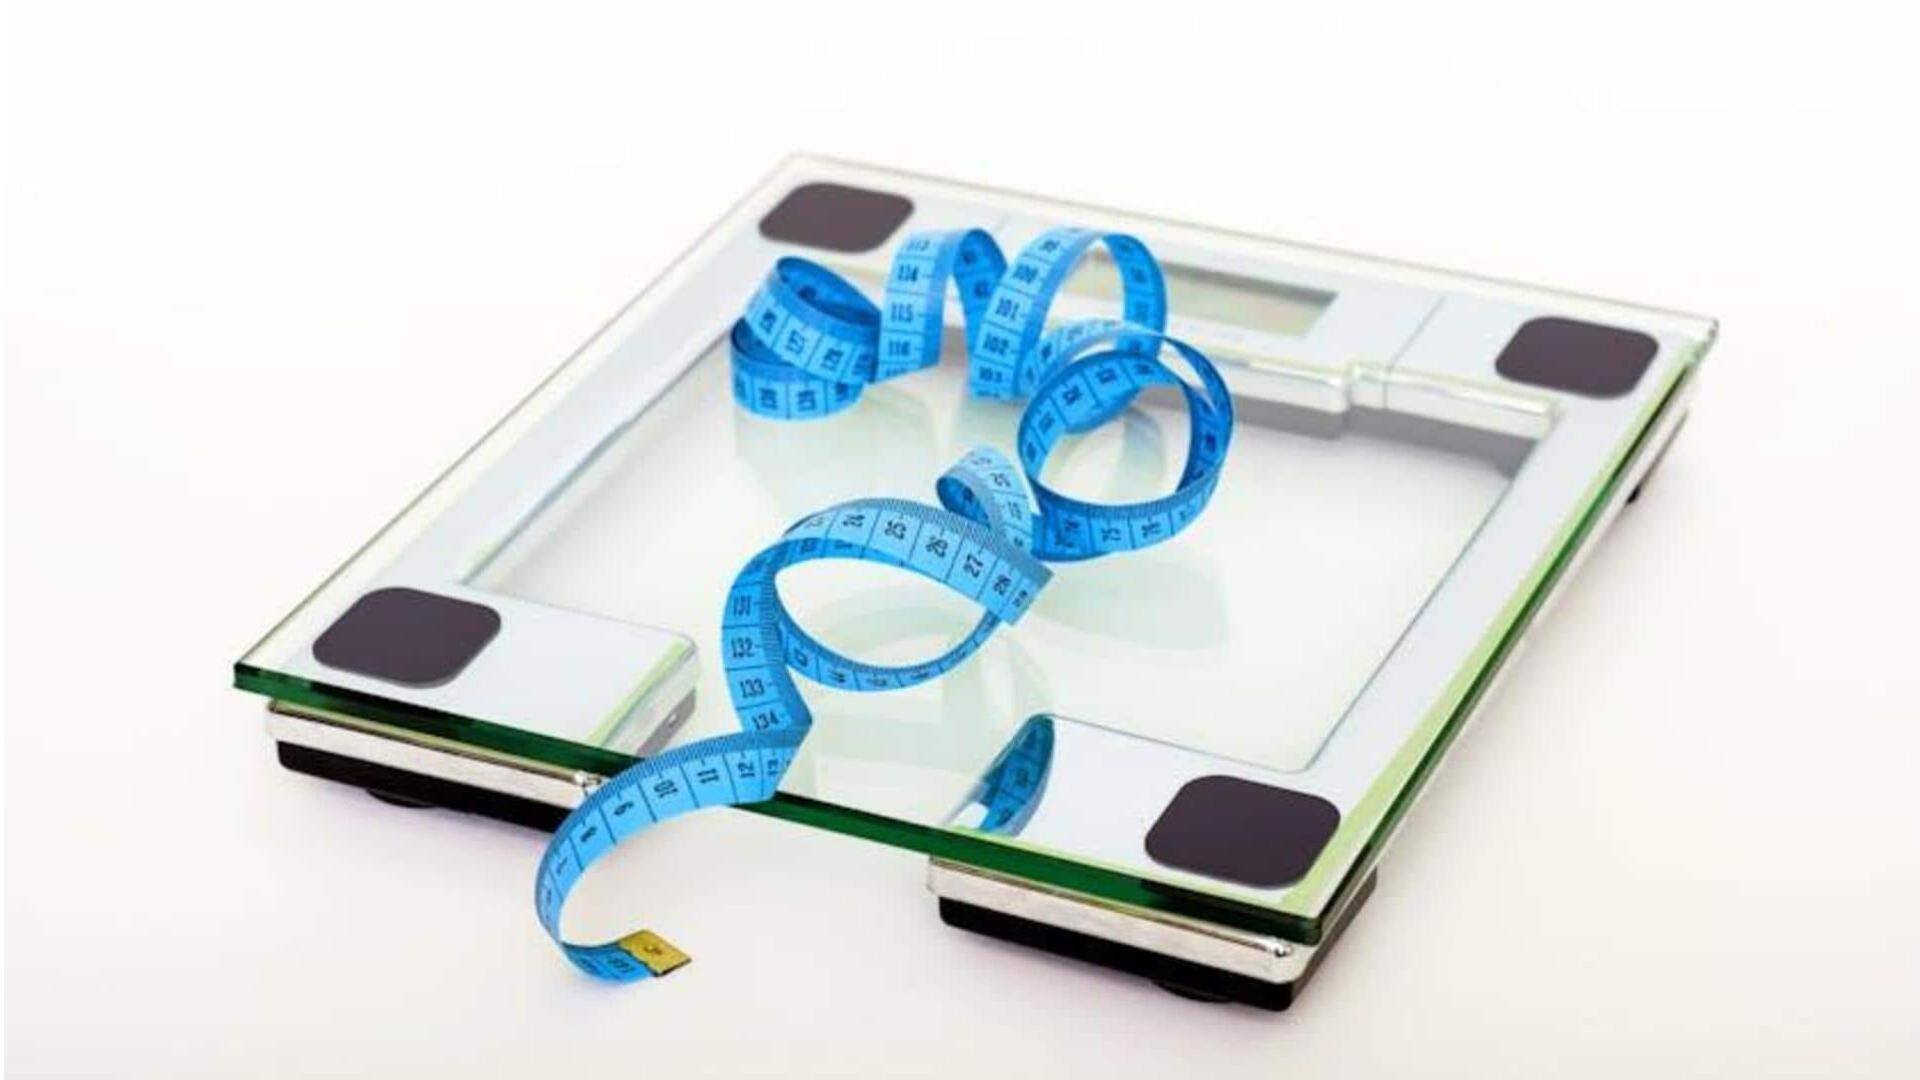 Anda bisa menurunkan berat badan tanpa diet. Begini caranya